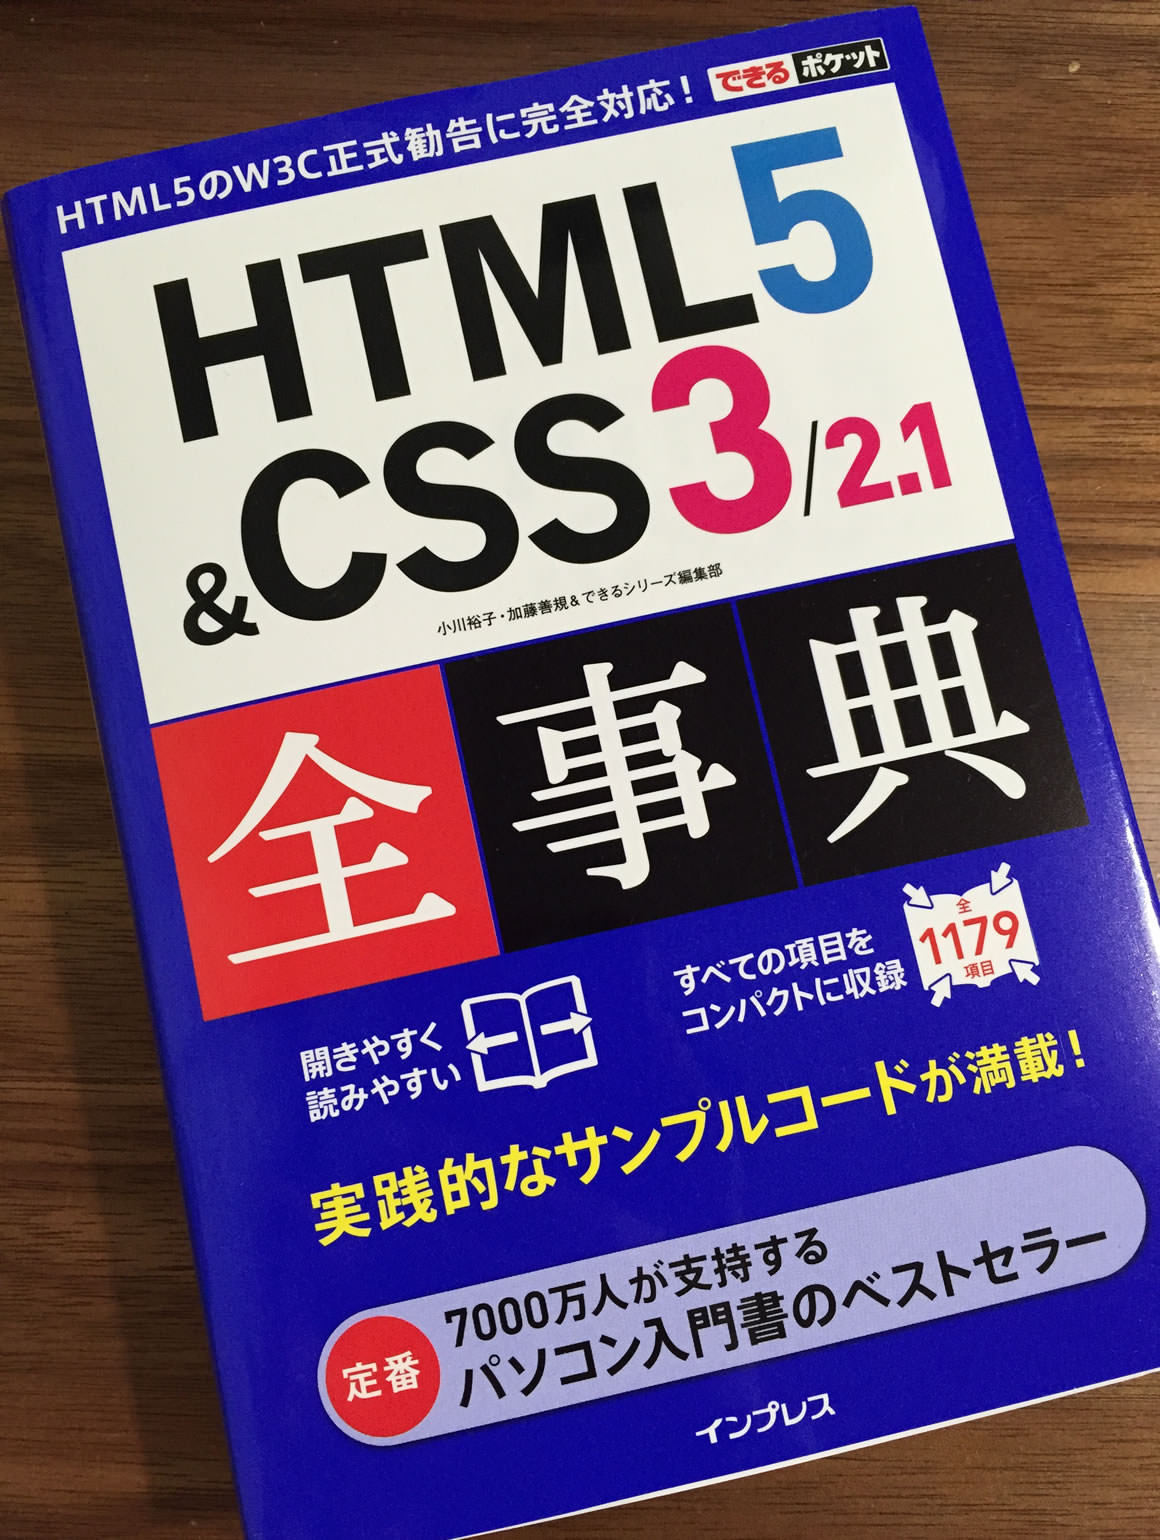 できるポケット HTML5 & CSS3/2.1 全事典